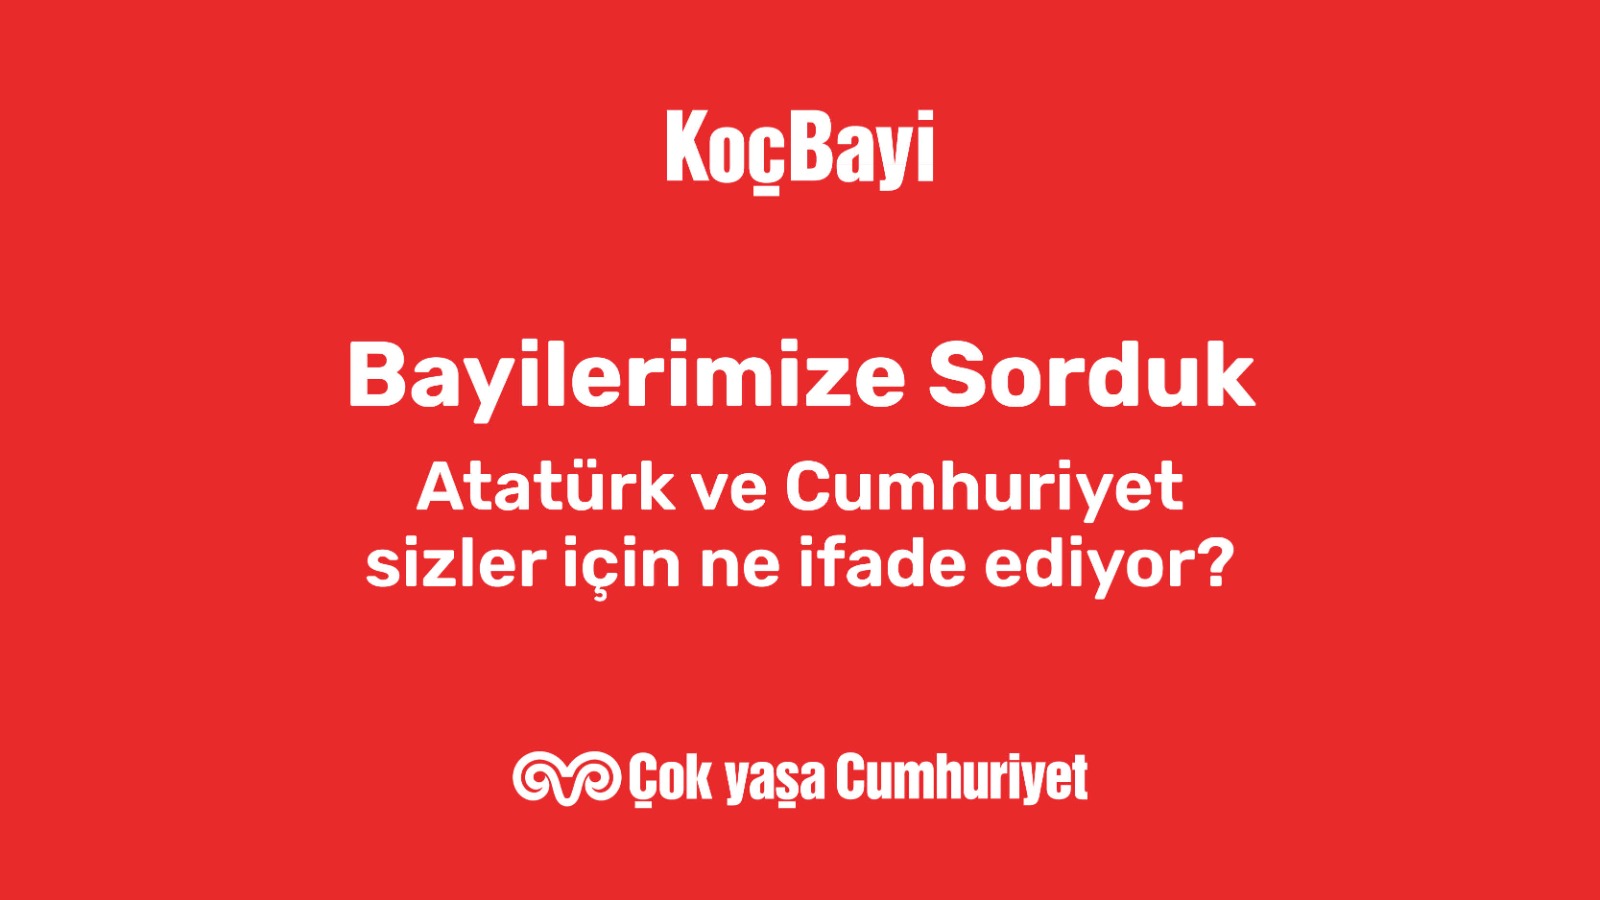 Bayilerimize sorduk: Atatürk ve Cumhuriyet sizin için ne anlam ifade ediyor? - 4